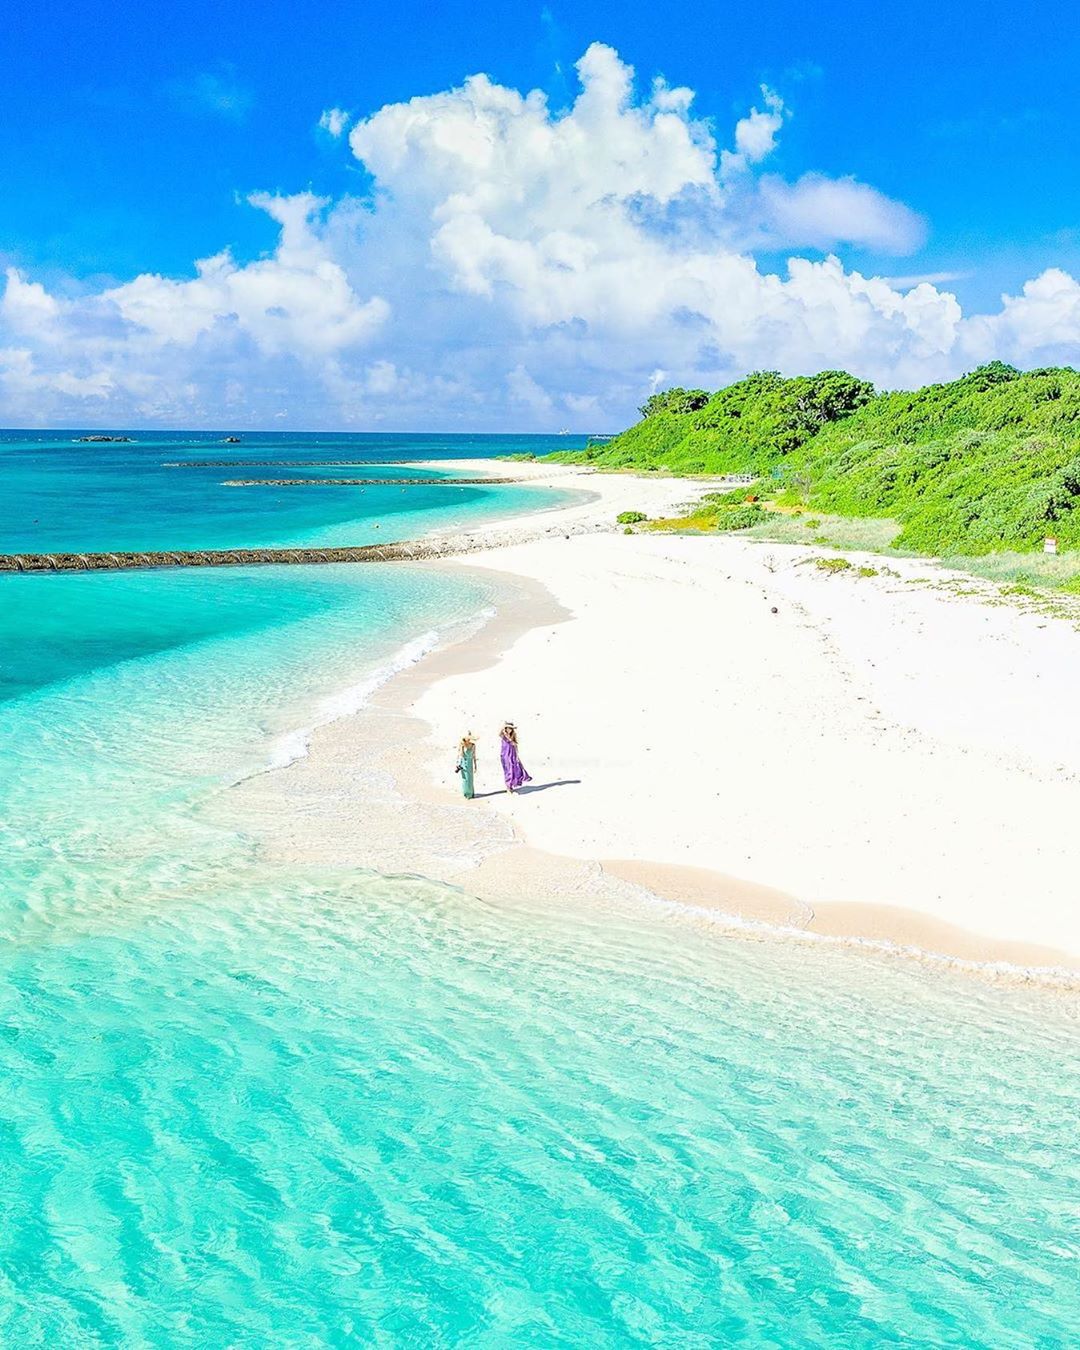 Retrip News Retrip 沖縄 こちらは沖縄の離島 伊良部島 のビーチです 伊良部島は宮古島の 北西に位置しています 透明度が高いエメラルドグリーンの海と白い砂浜が美し Wacoca